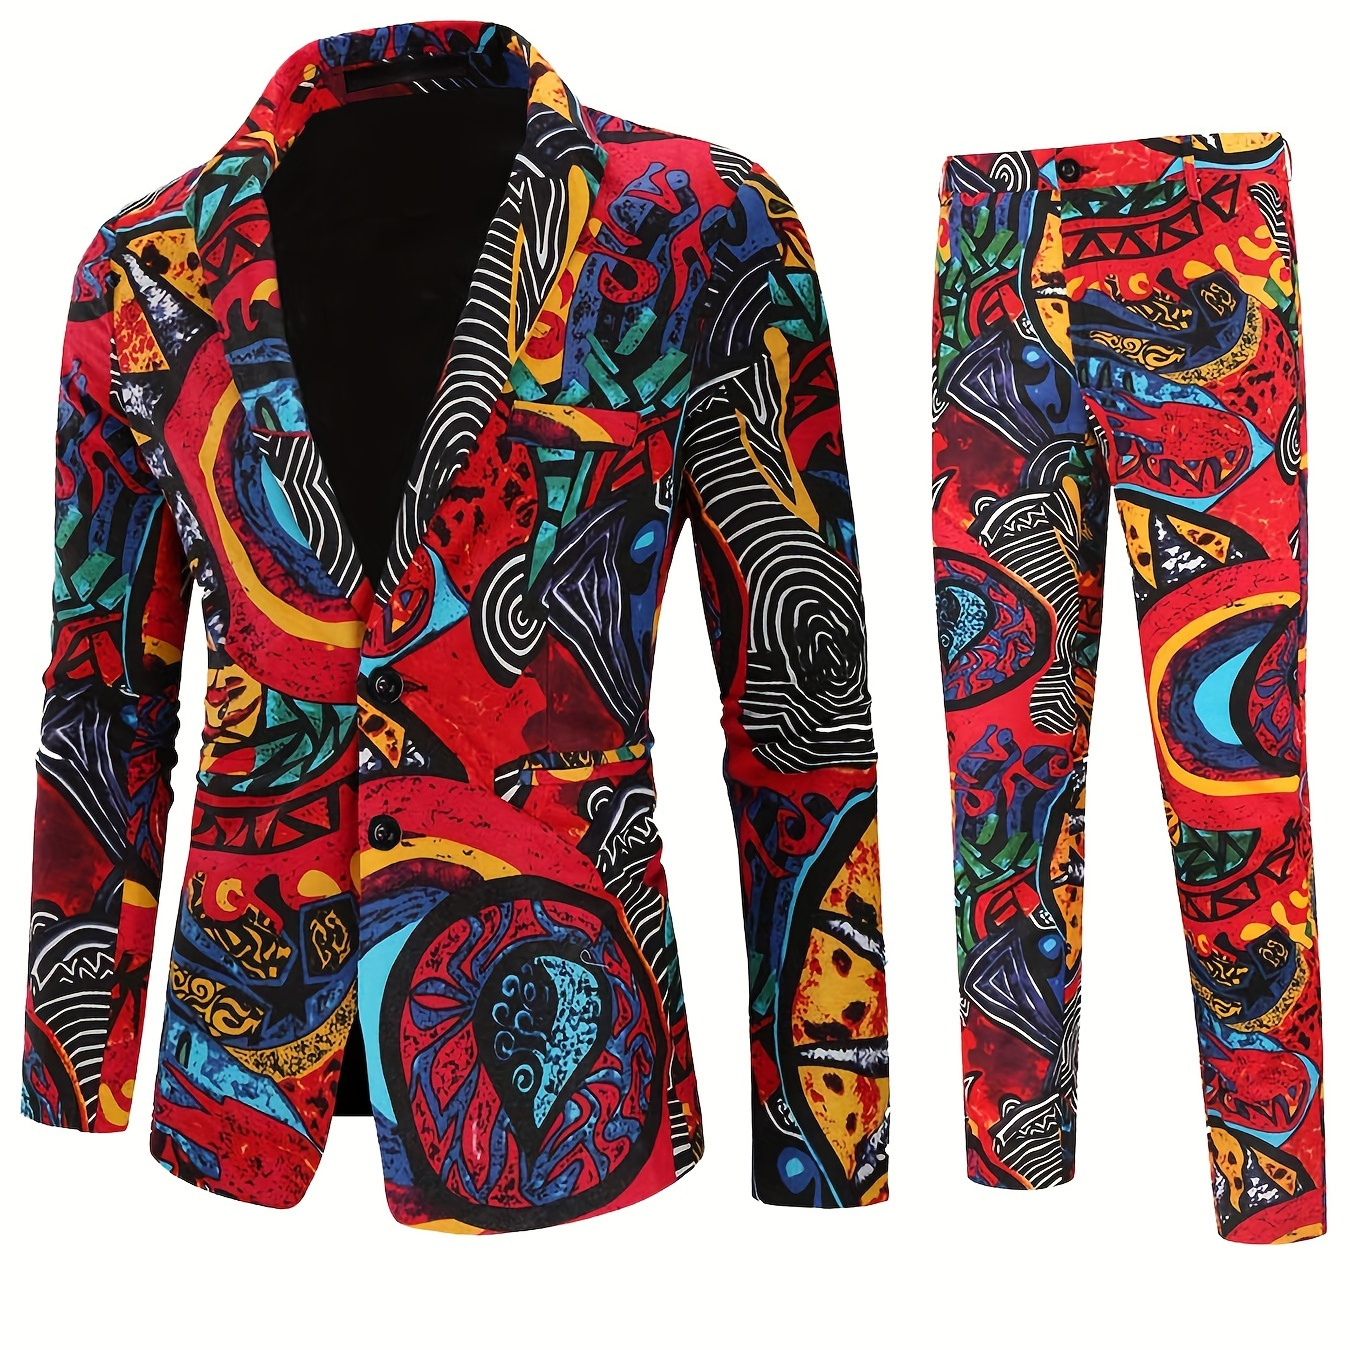 

2pcs/set Suits, Men's Colorful Lapel Blazer & Pants, Business Suit For Casual Occasions